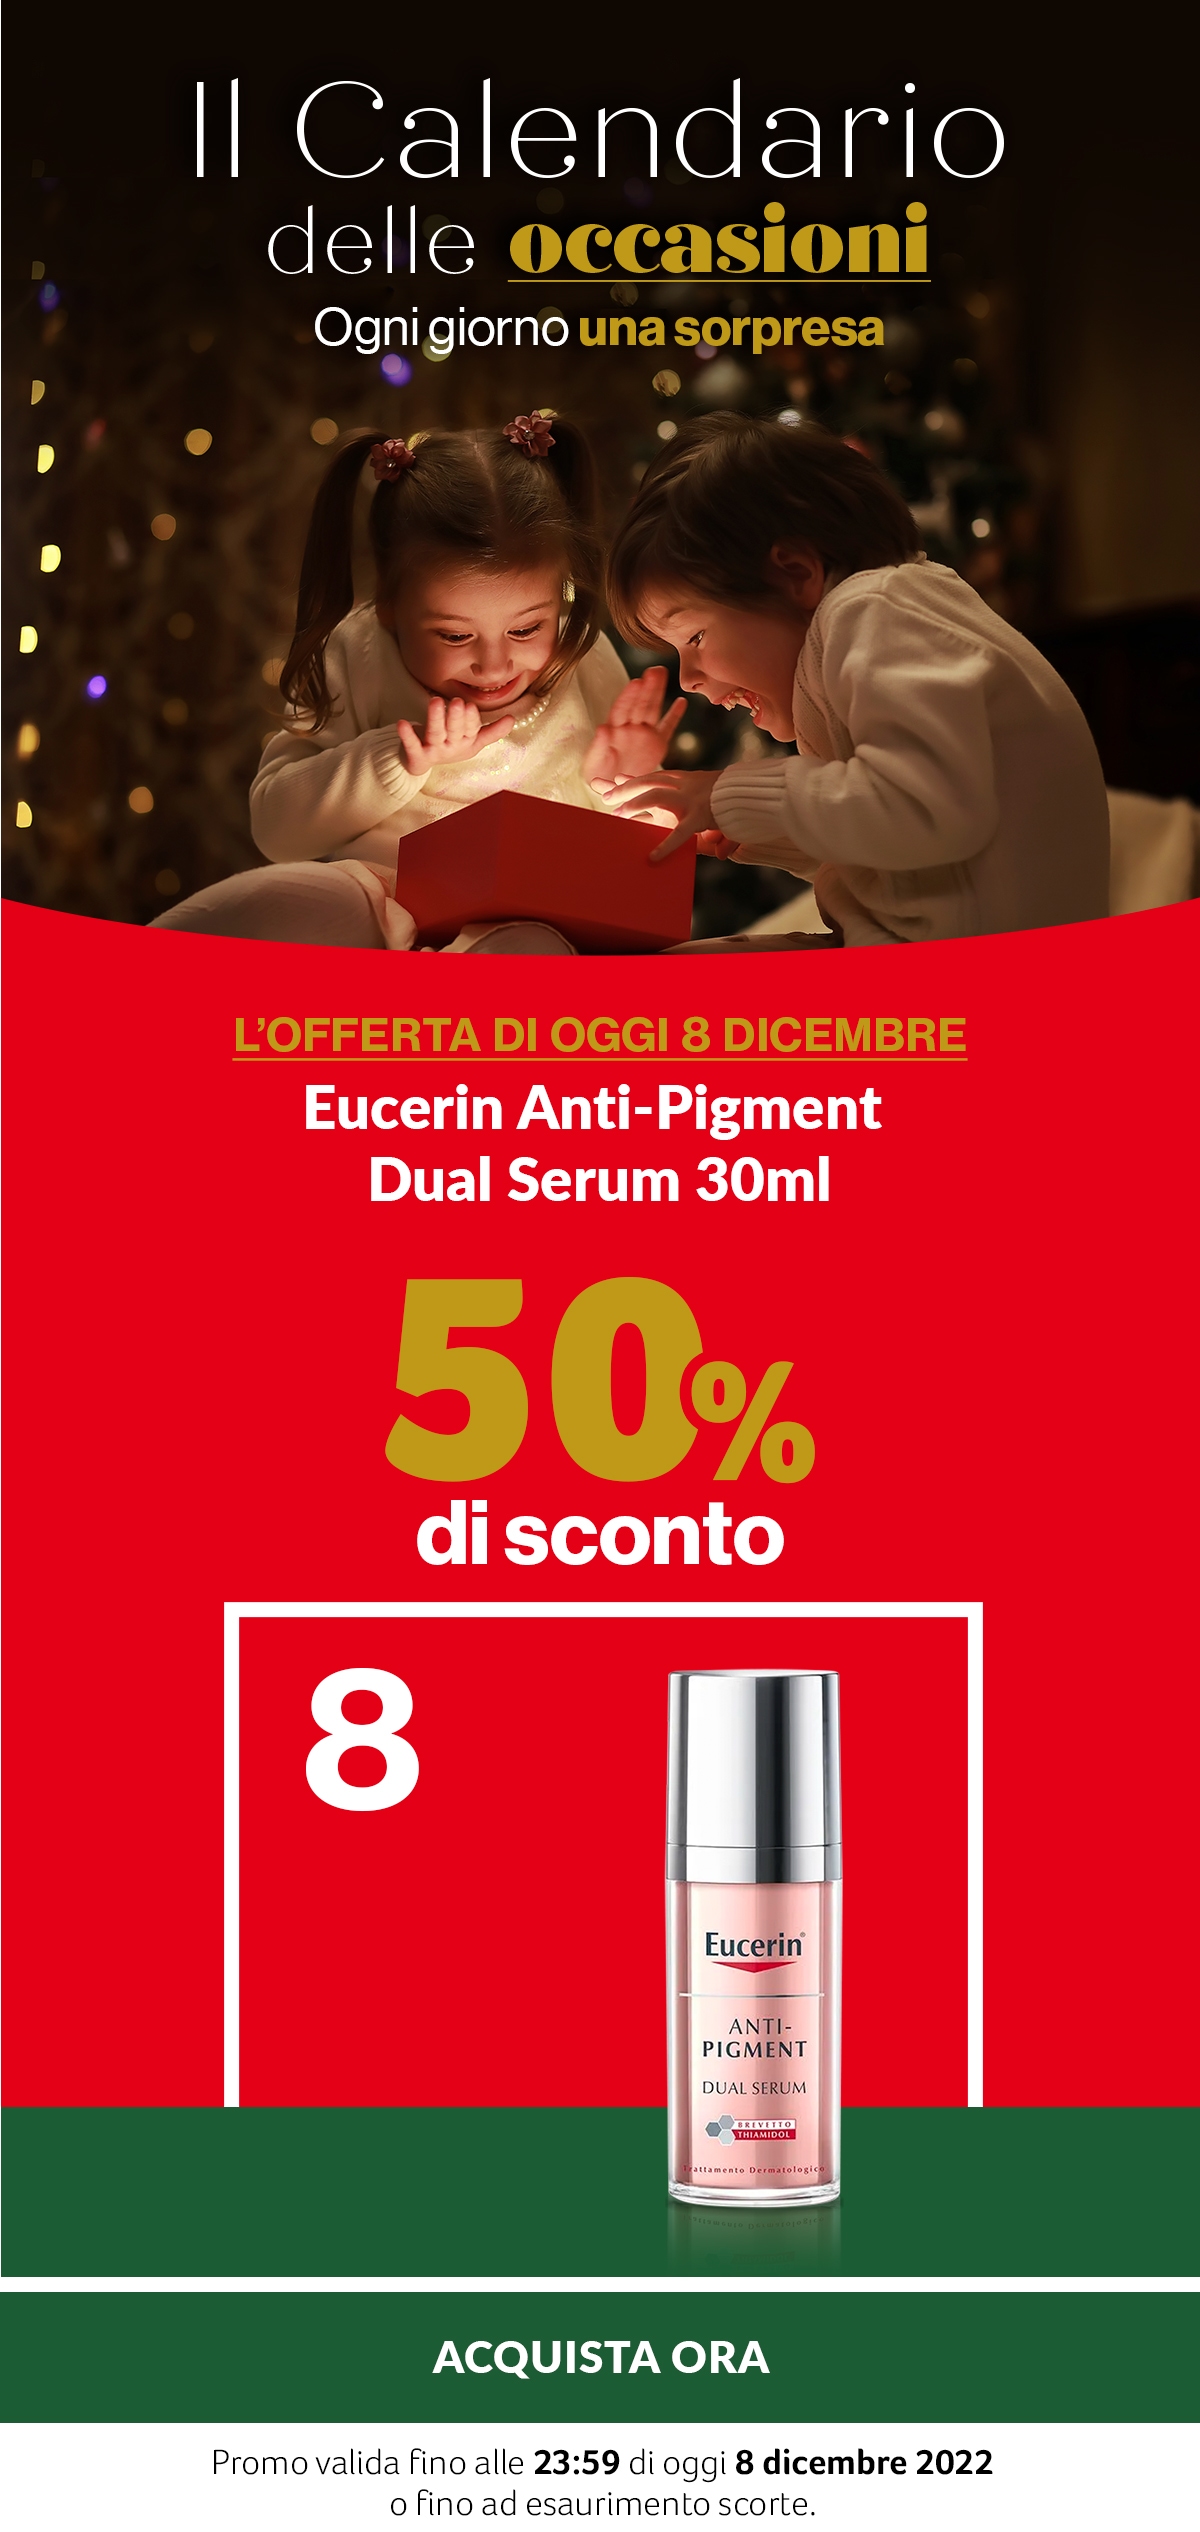 Il calendario delle occasioni 08.12 -50% Eucerin Anti-Pigment Dual Serum 30ml